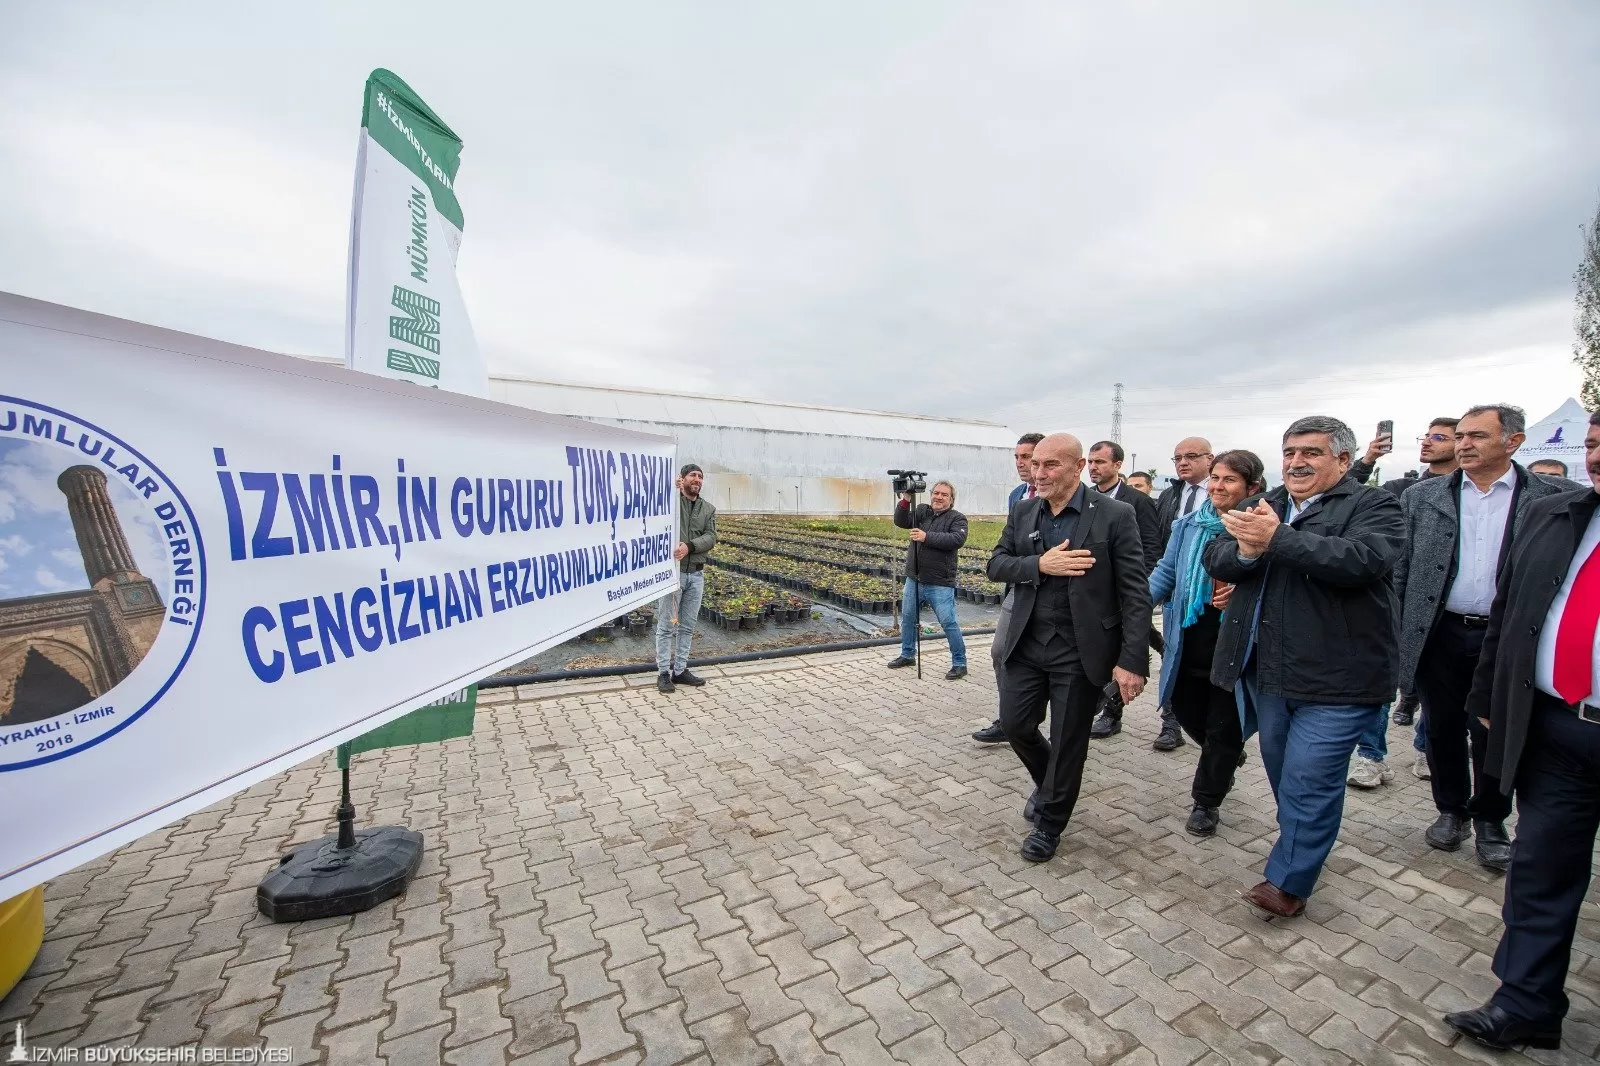 İzmir Büyükşehir Belediyesi, kuraklıkla mücadele için hayata geçirdiği Sünger Kent projesi kapsamında Türkiye'nin ilk biyolojik sızdırma göletini İzmir'in Ödemiş ilçesinde inşa etti.